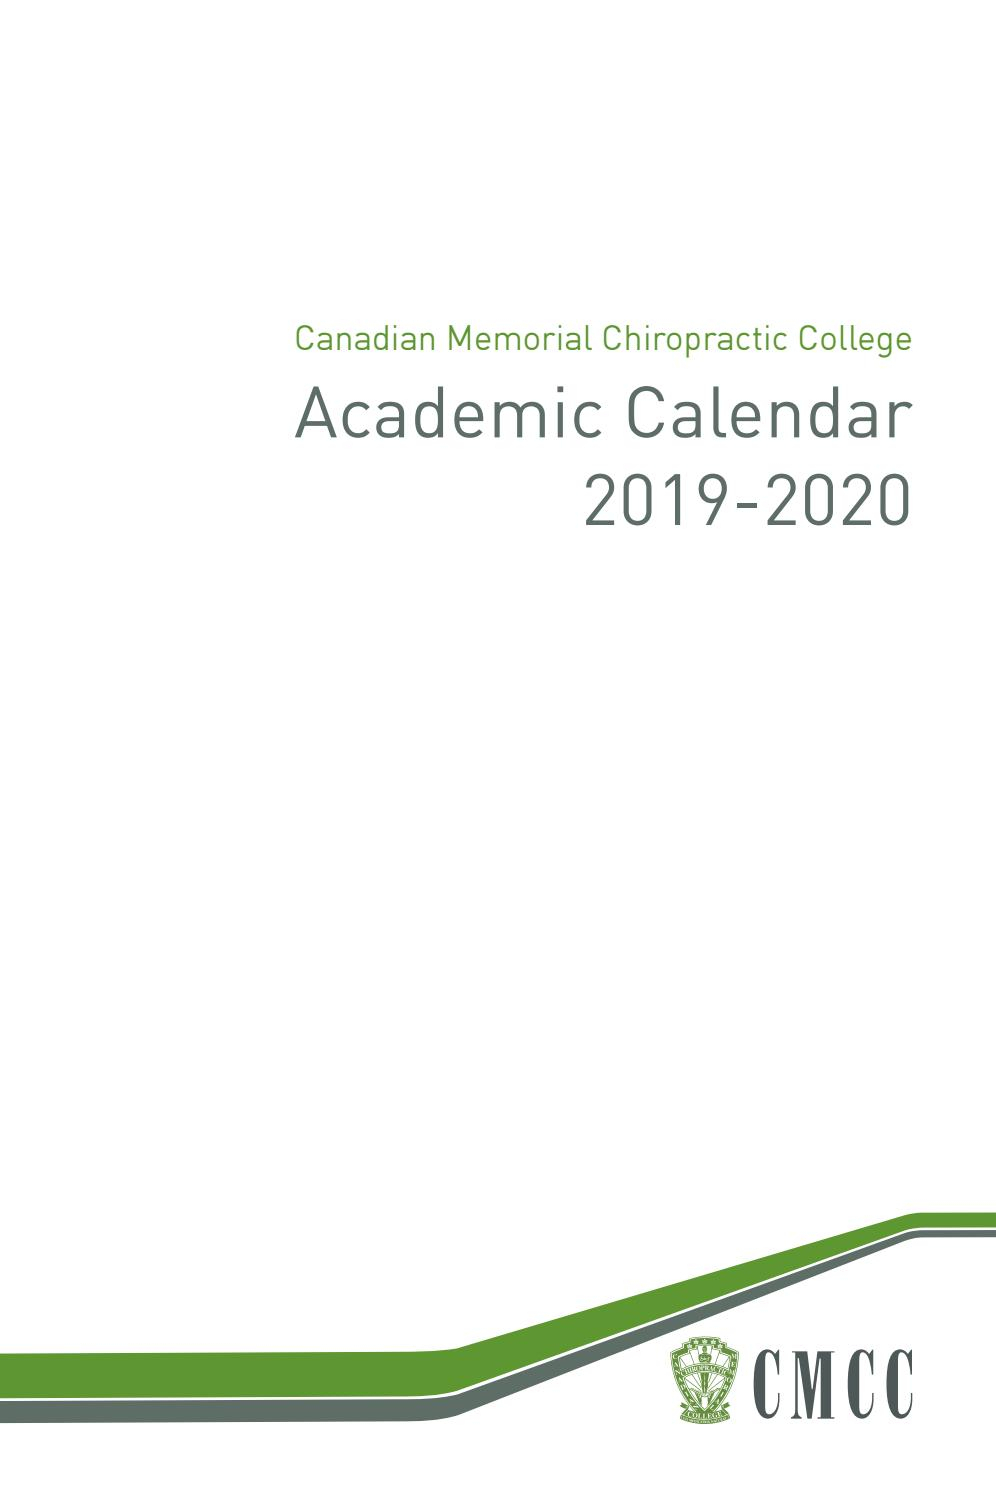 Academic Calendar 2019-2020Canadian Memorial